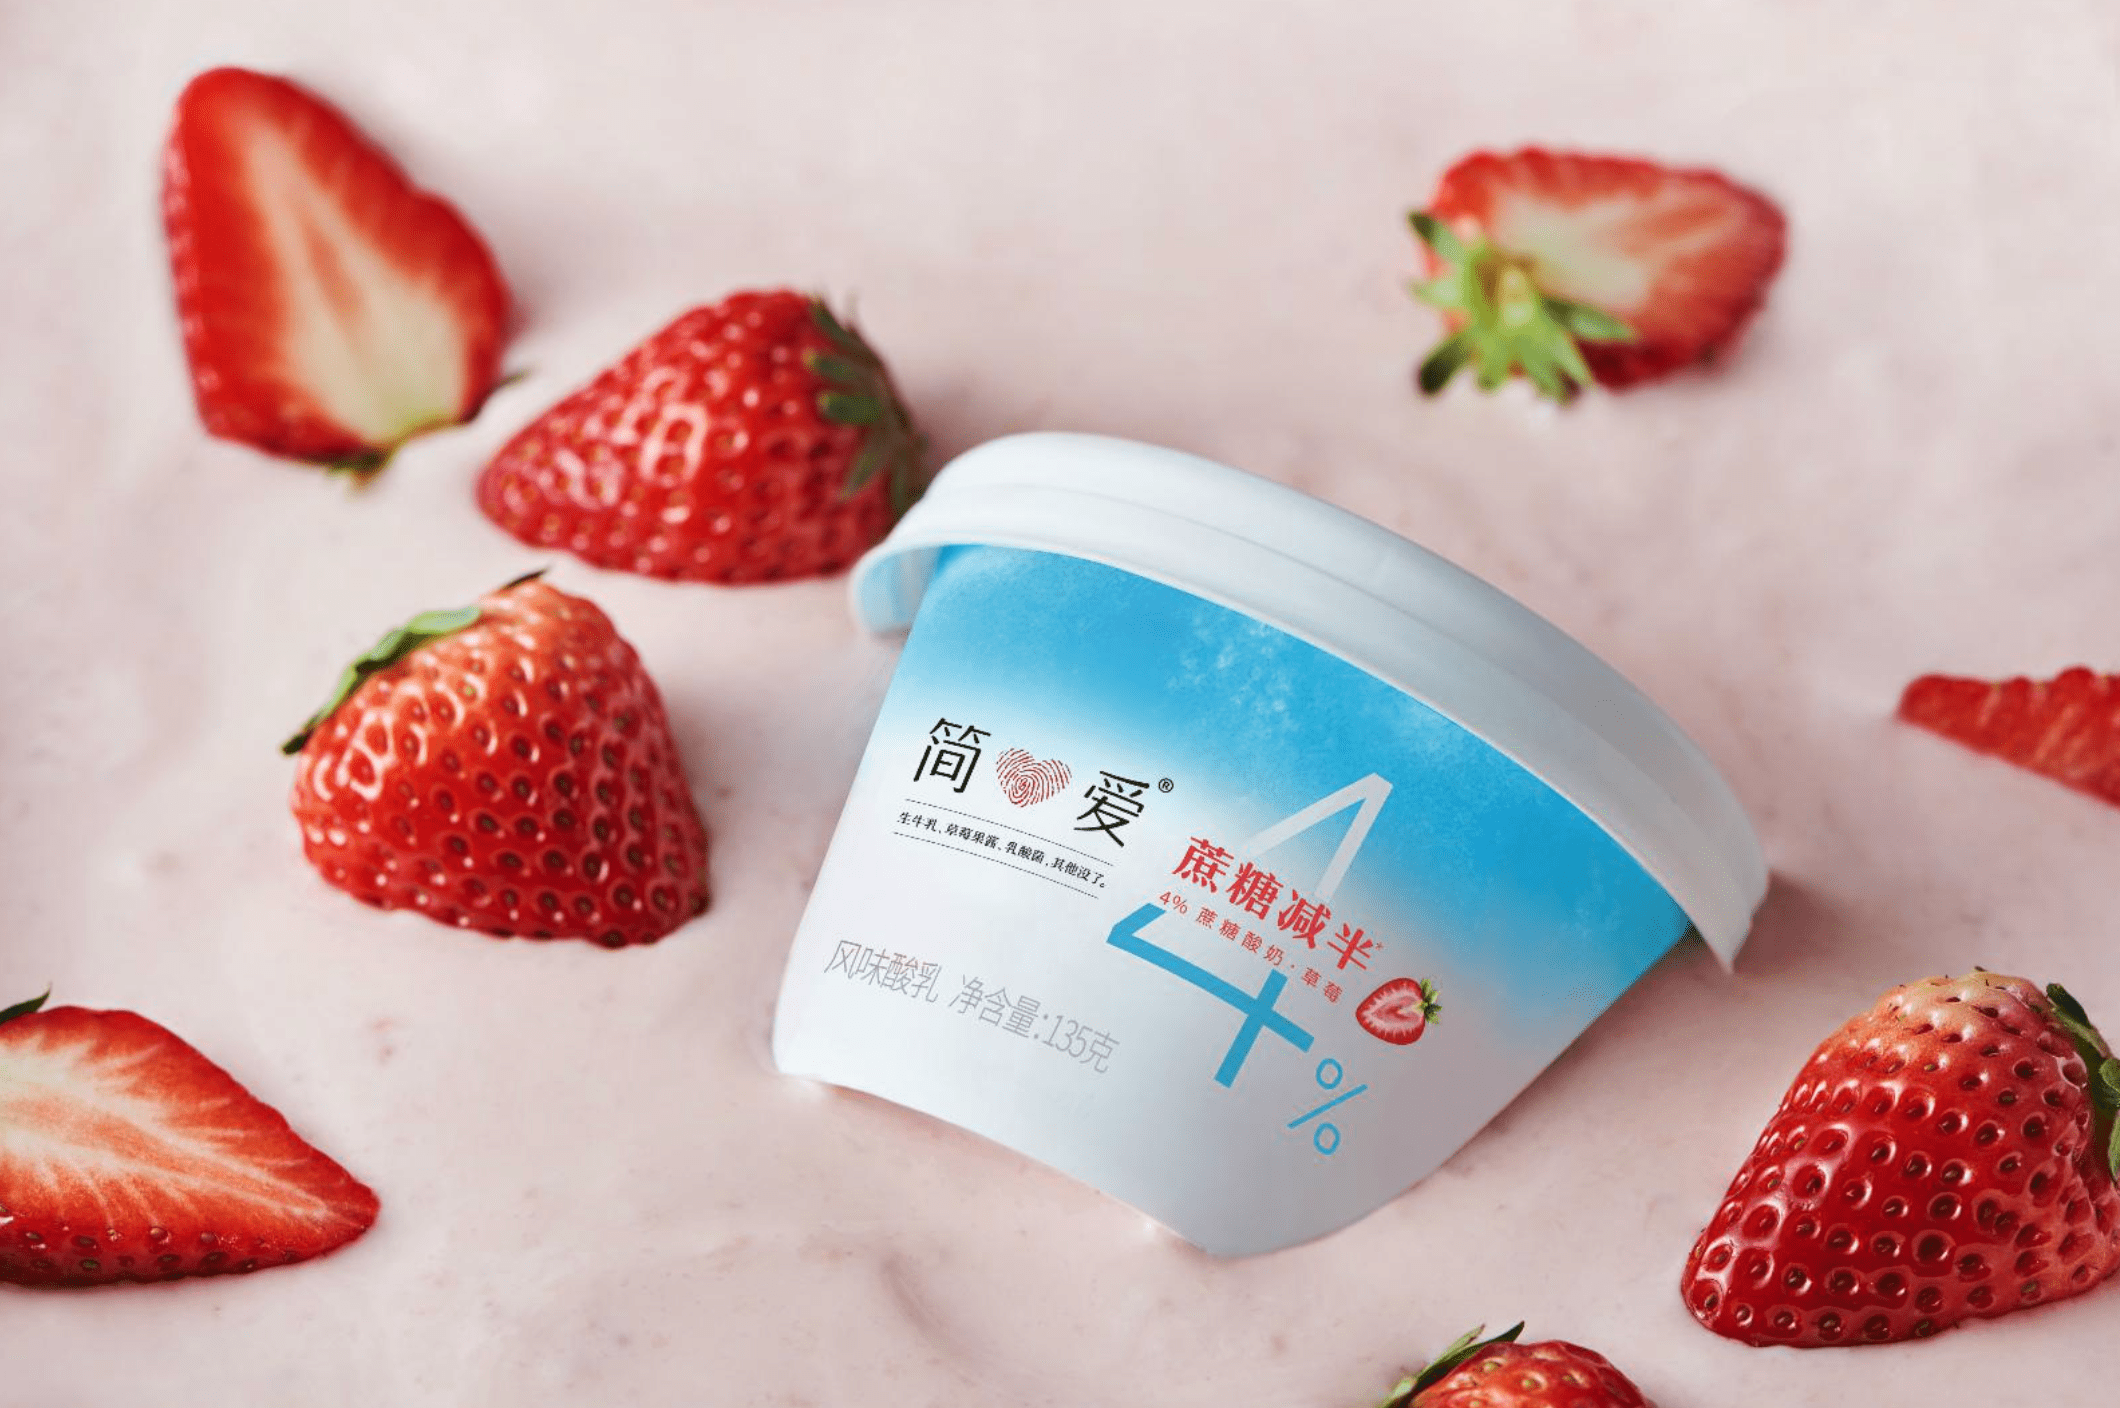 Chinese yogurt brand Simple Love raises $122m for supply chain upgrade